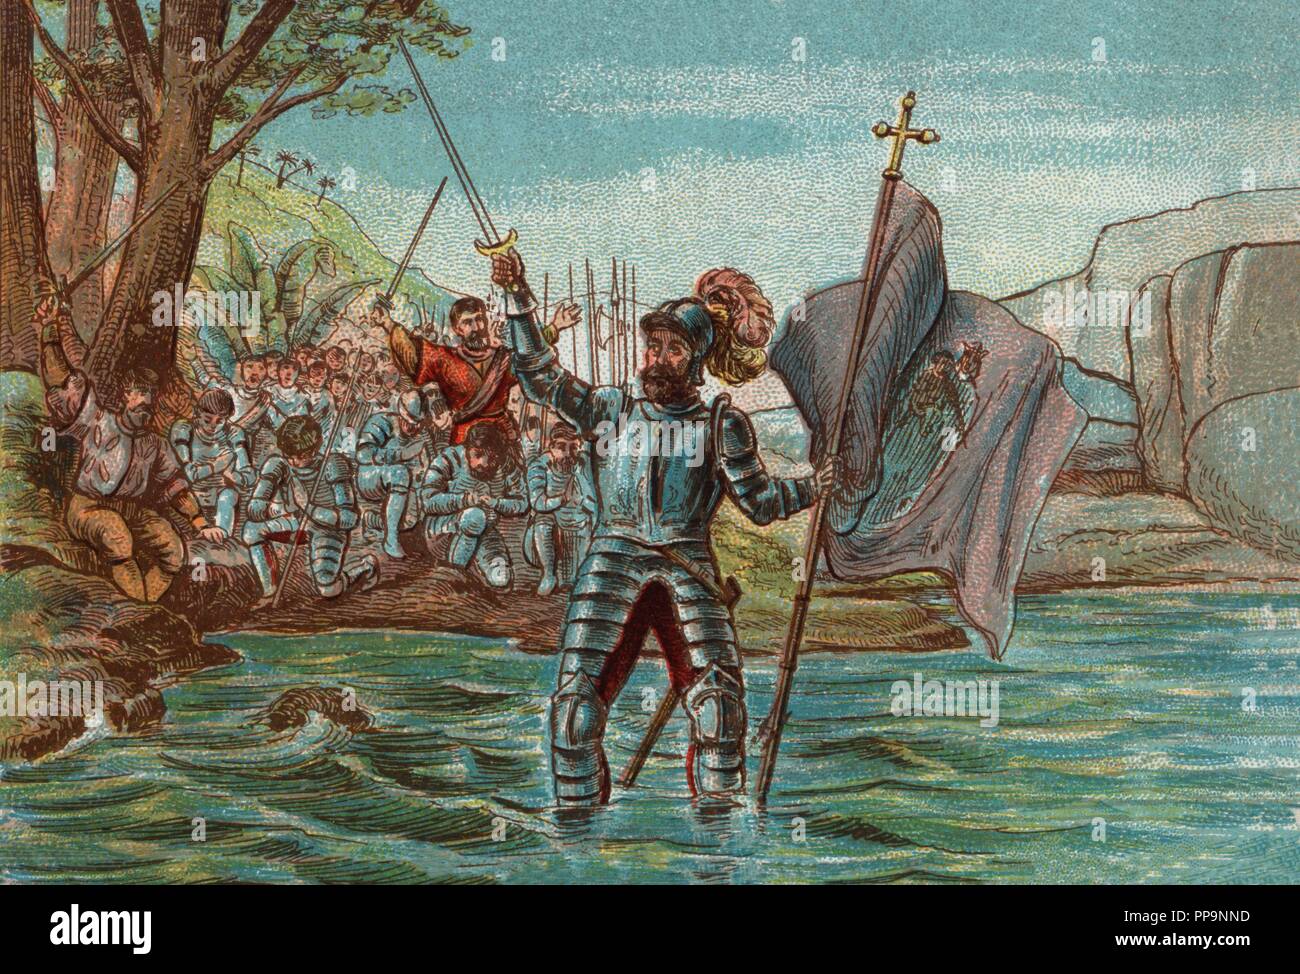 Historia de España. Vasco Núñez de Balboa (1475-1519), explorador y conquistador español, descubridor del océano Pacífico en septiembre de 1513, bautizado com Mar del Sur. Stock Photo